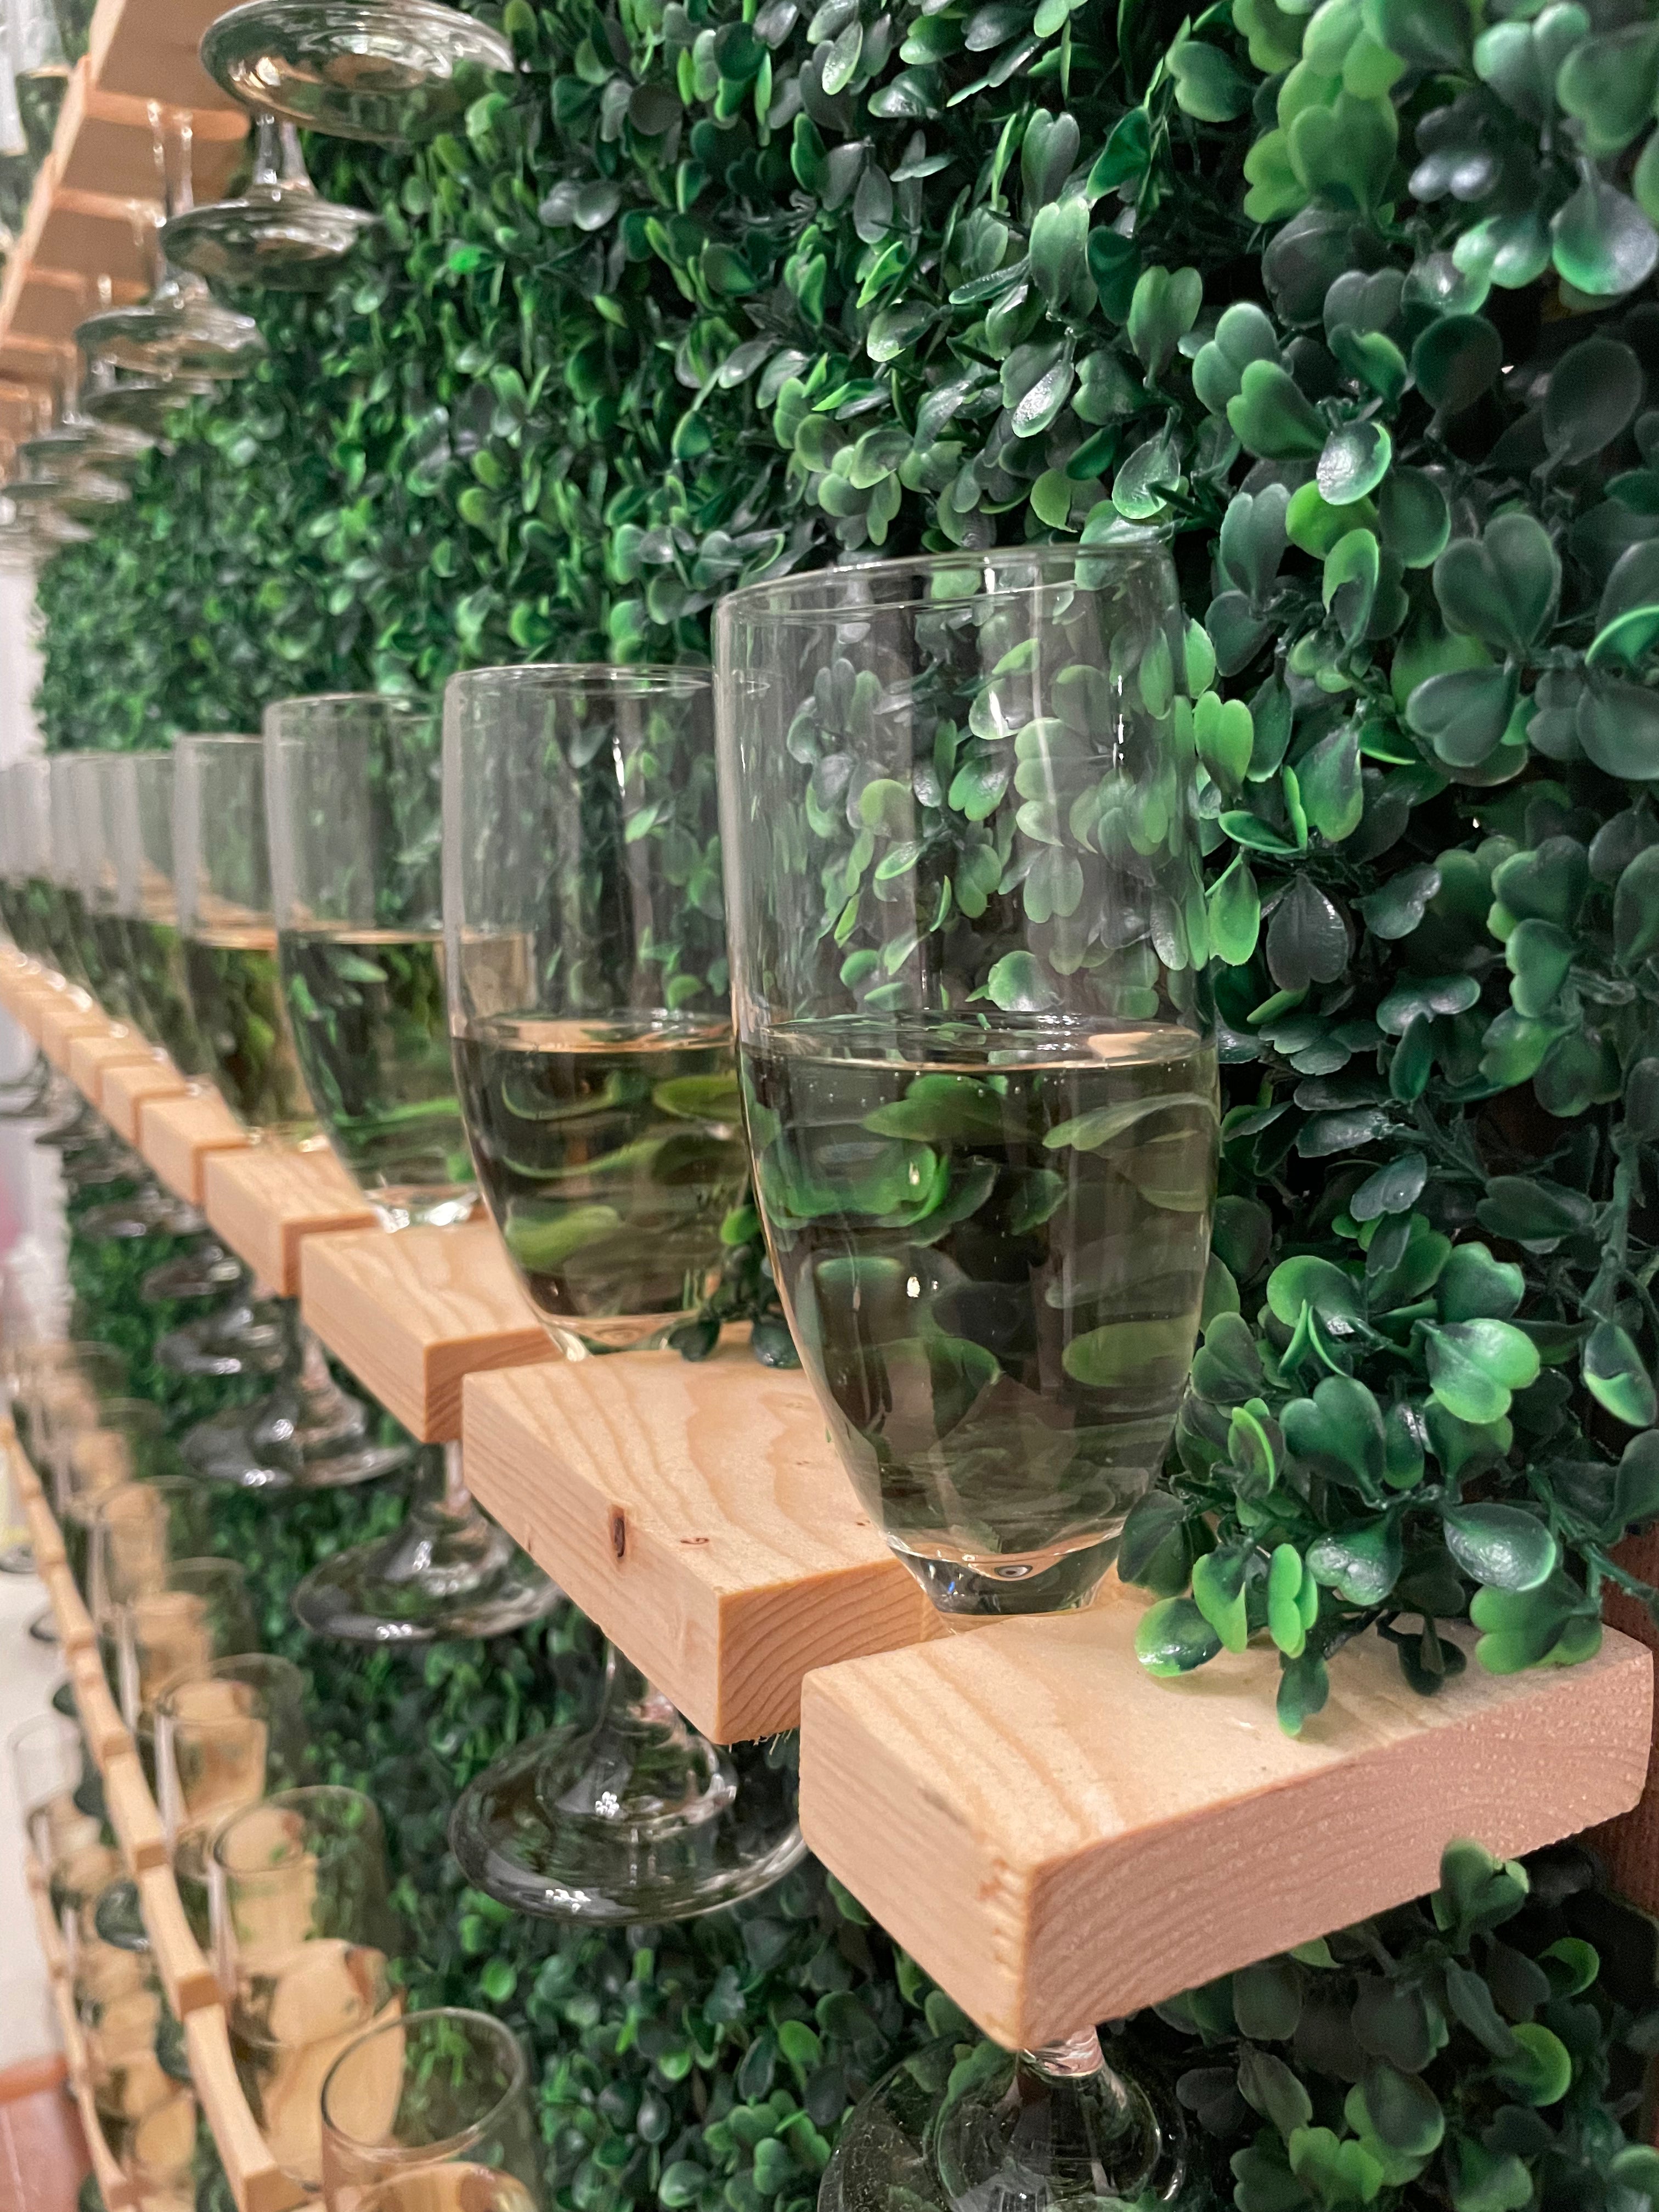 Greenery Champagne Wall Rental